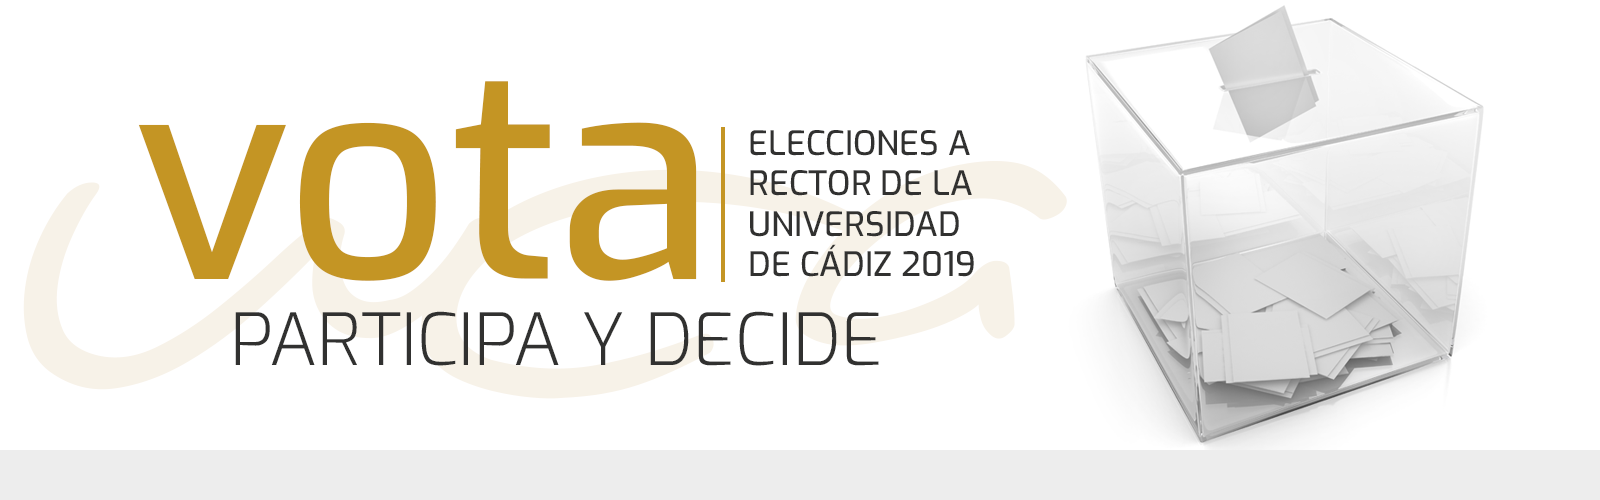 ELECCIONES A RECTOR – Presentación candidatura Prof. Casimiro Mantell